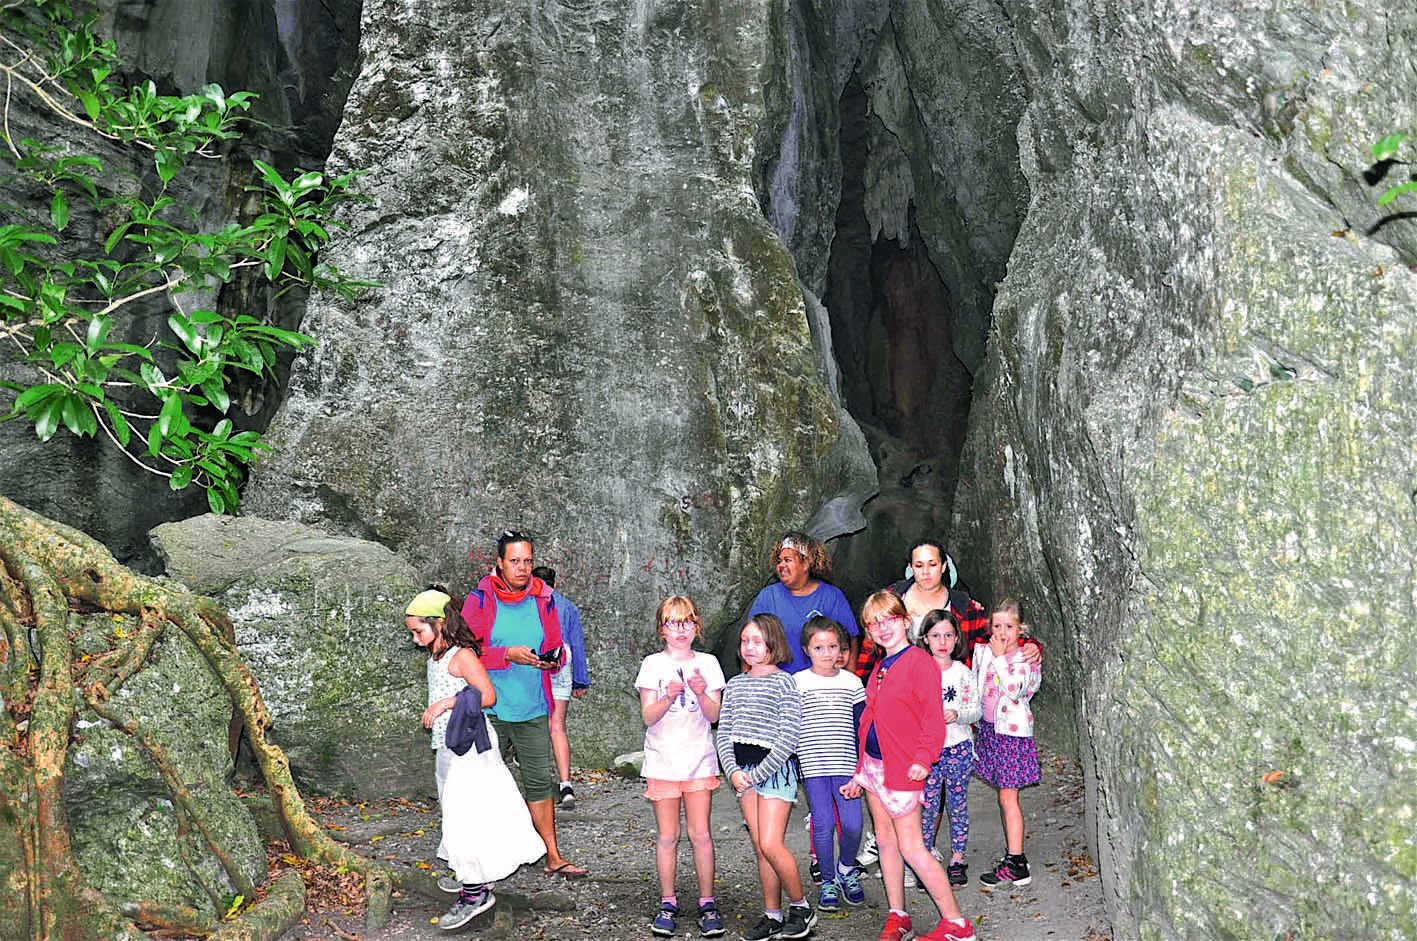 Après avoir rendu l’odorat (lundi), l’ouïe (mardi), le toucher (mercredi), à Penin, les enfants lui ont restitué la vue, jeudi,  en visitant le site des grottes et le point de vue de Koumac.